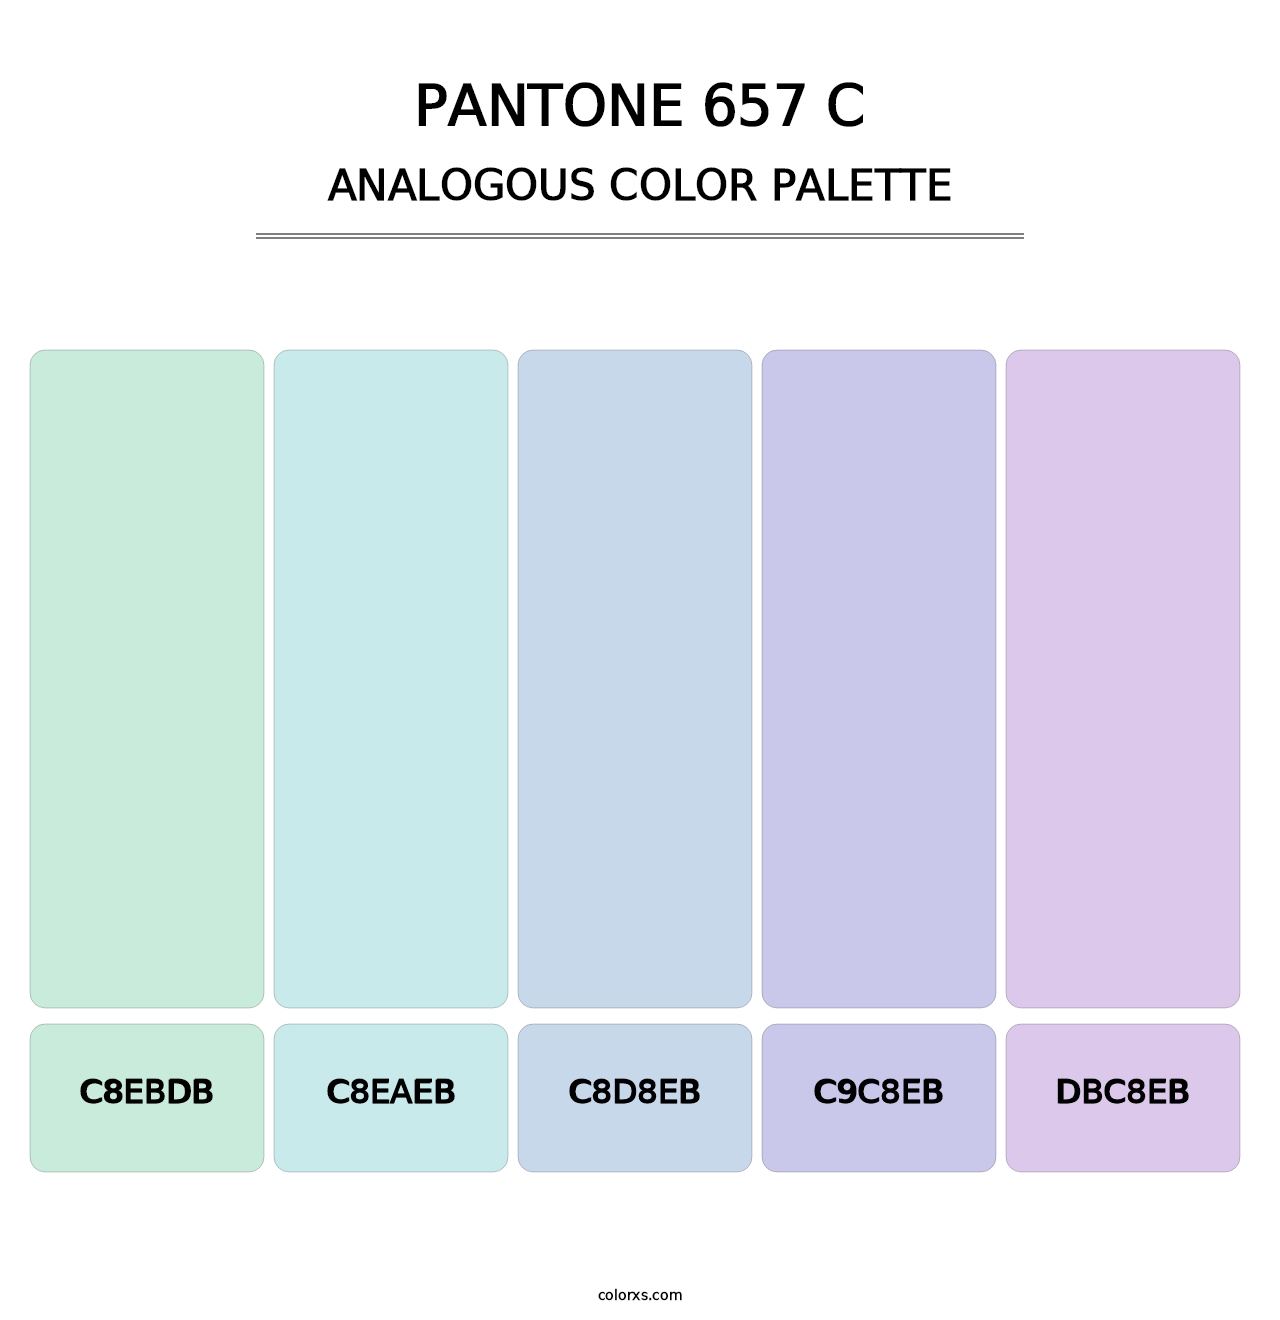 PANTONE 657 C - Analogous Color Palette